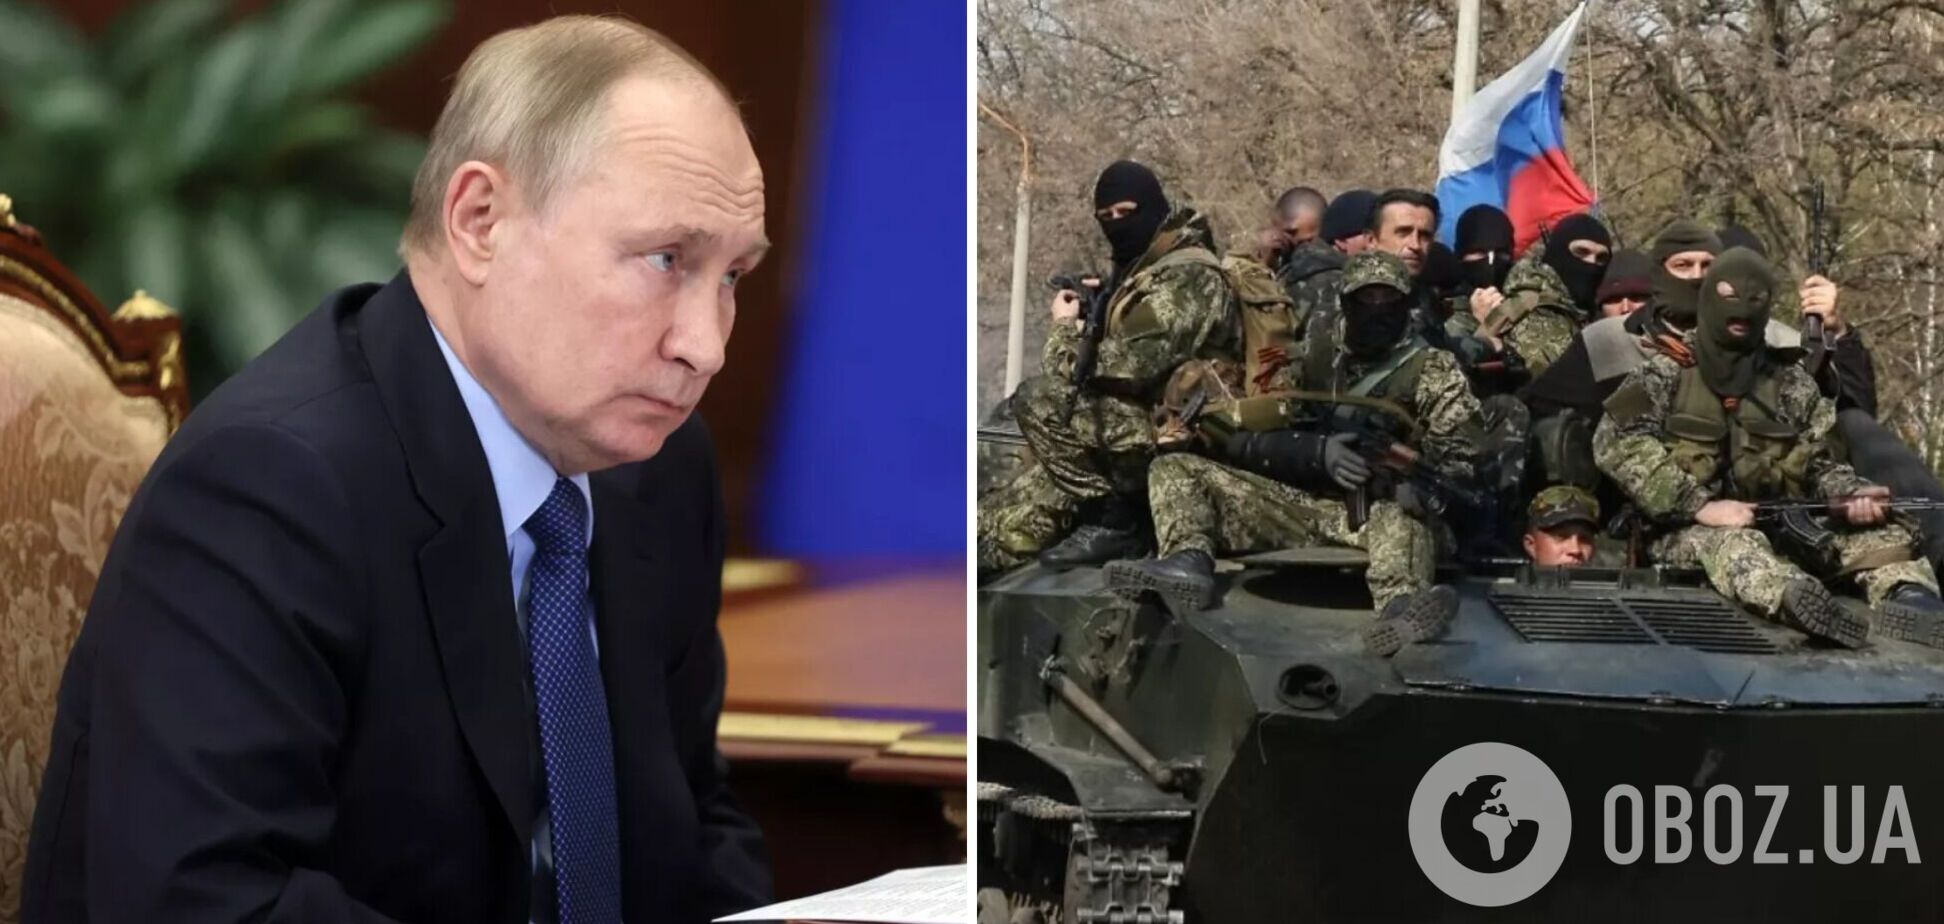 Чудовищная война с Украиной должна быть немедленно остановлена, а Путин – отправлен в отставку